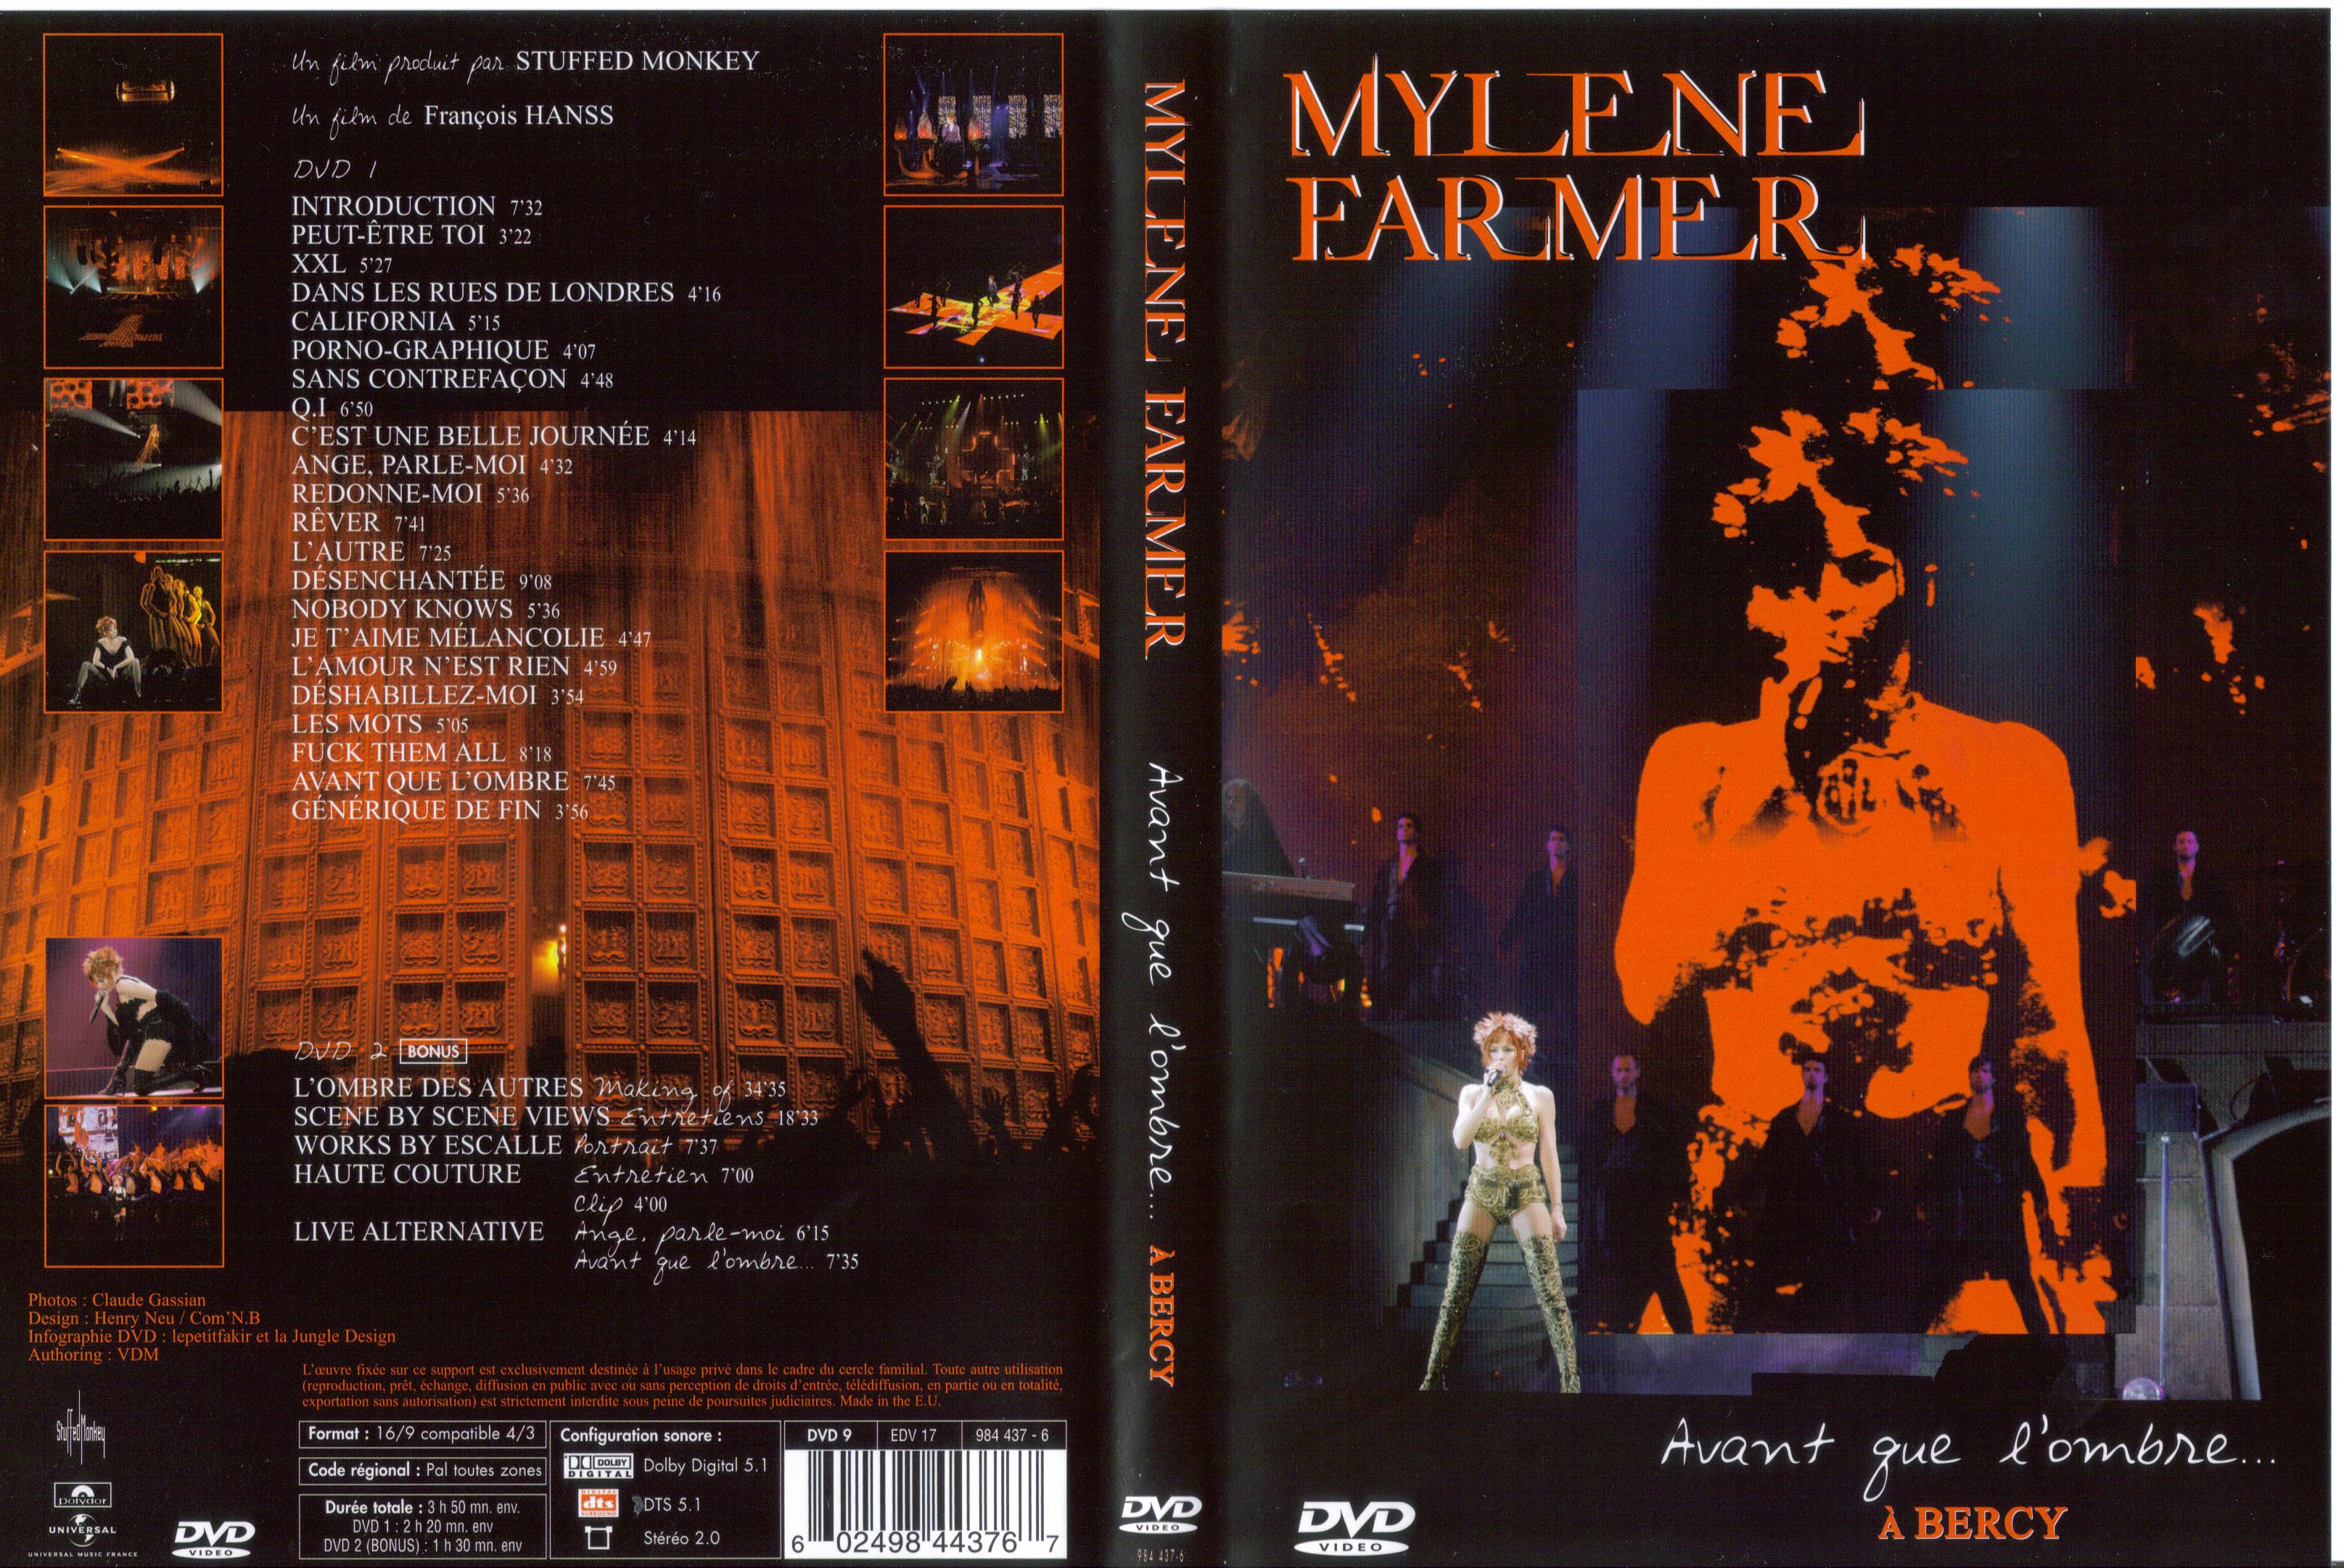 Jaquette DVD Mylene Farmer Bercy 2006 v2